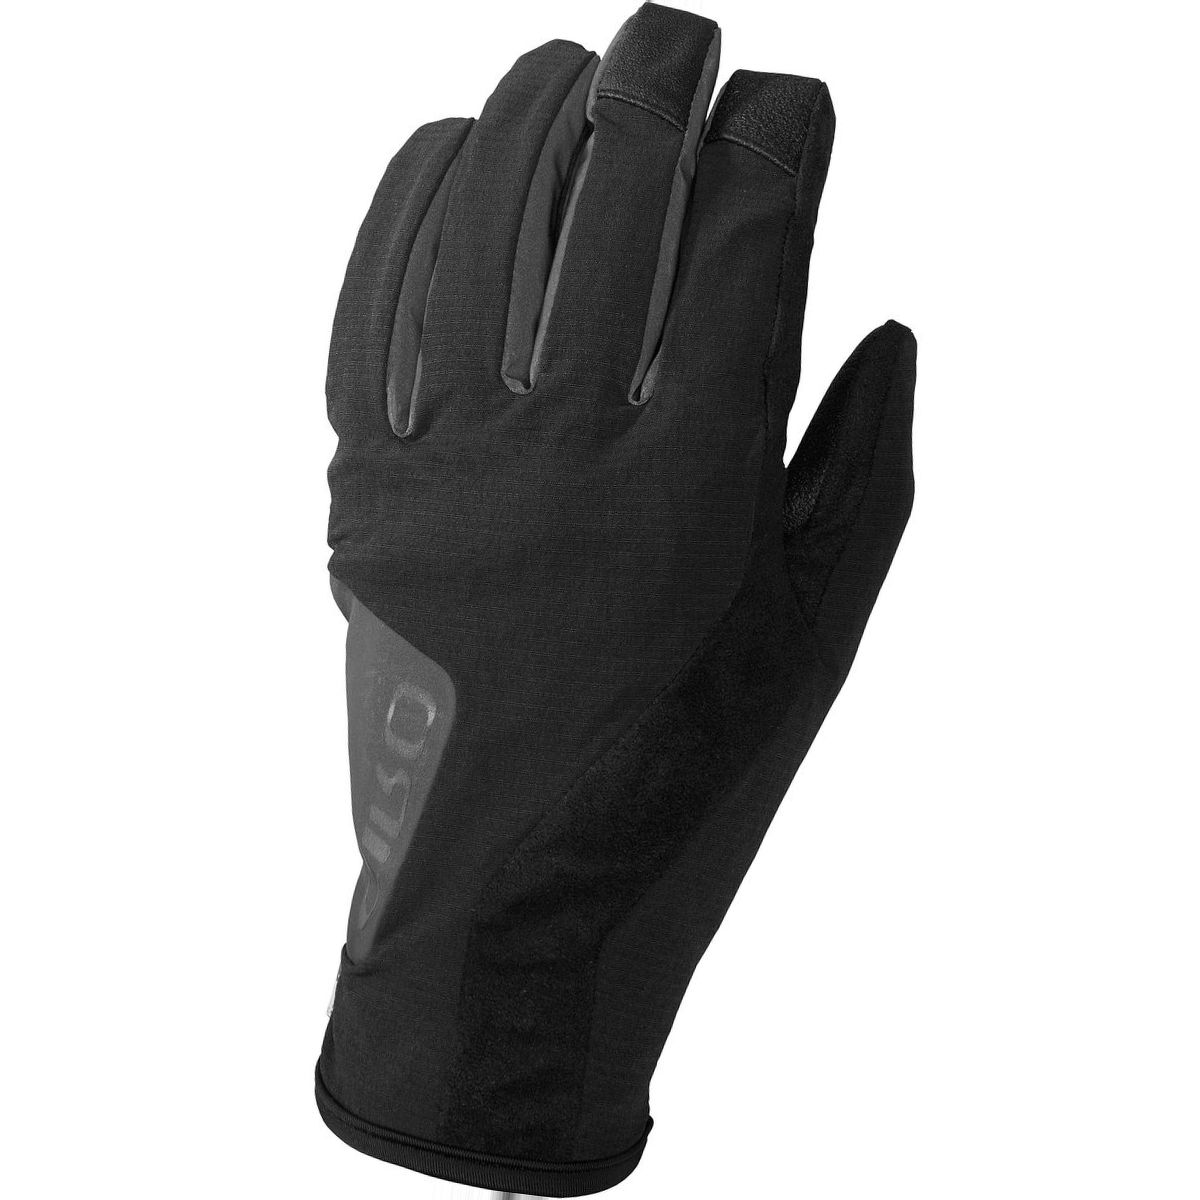 Giro Pivot II Glove - Men's